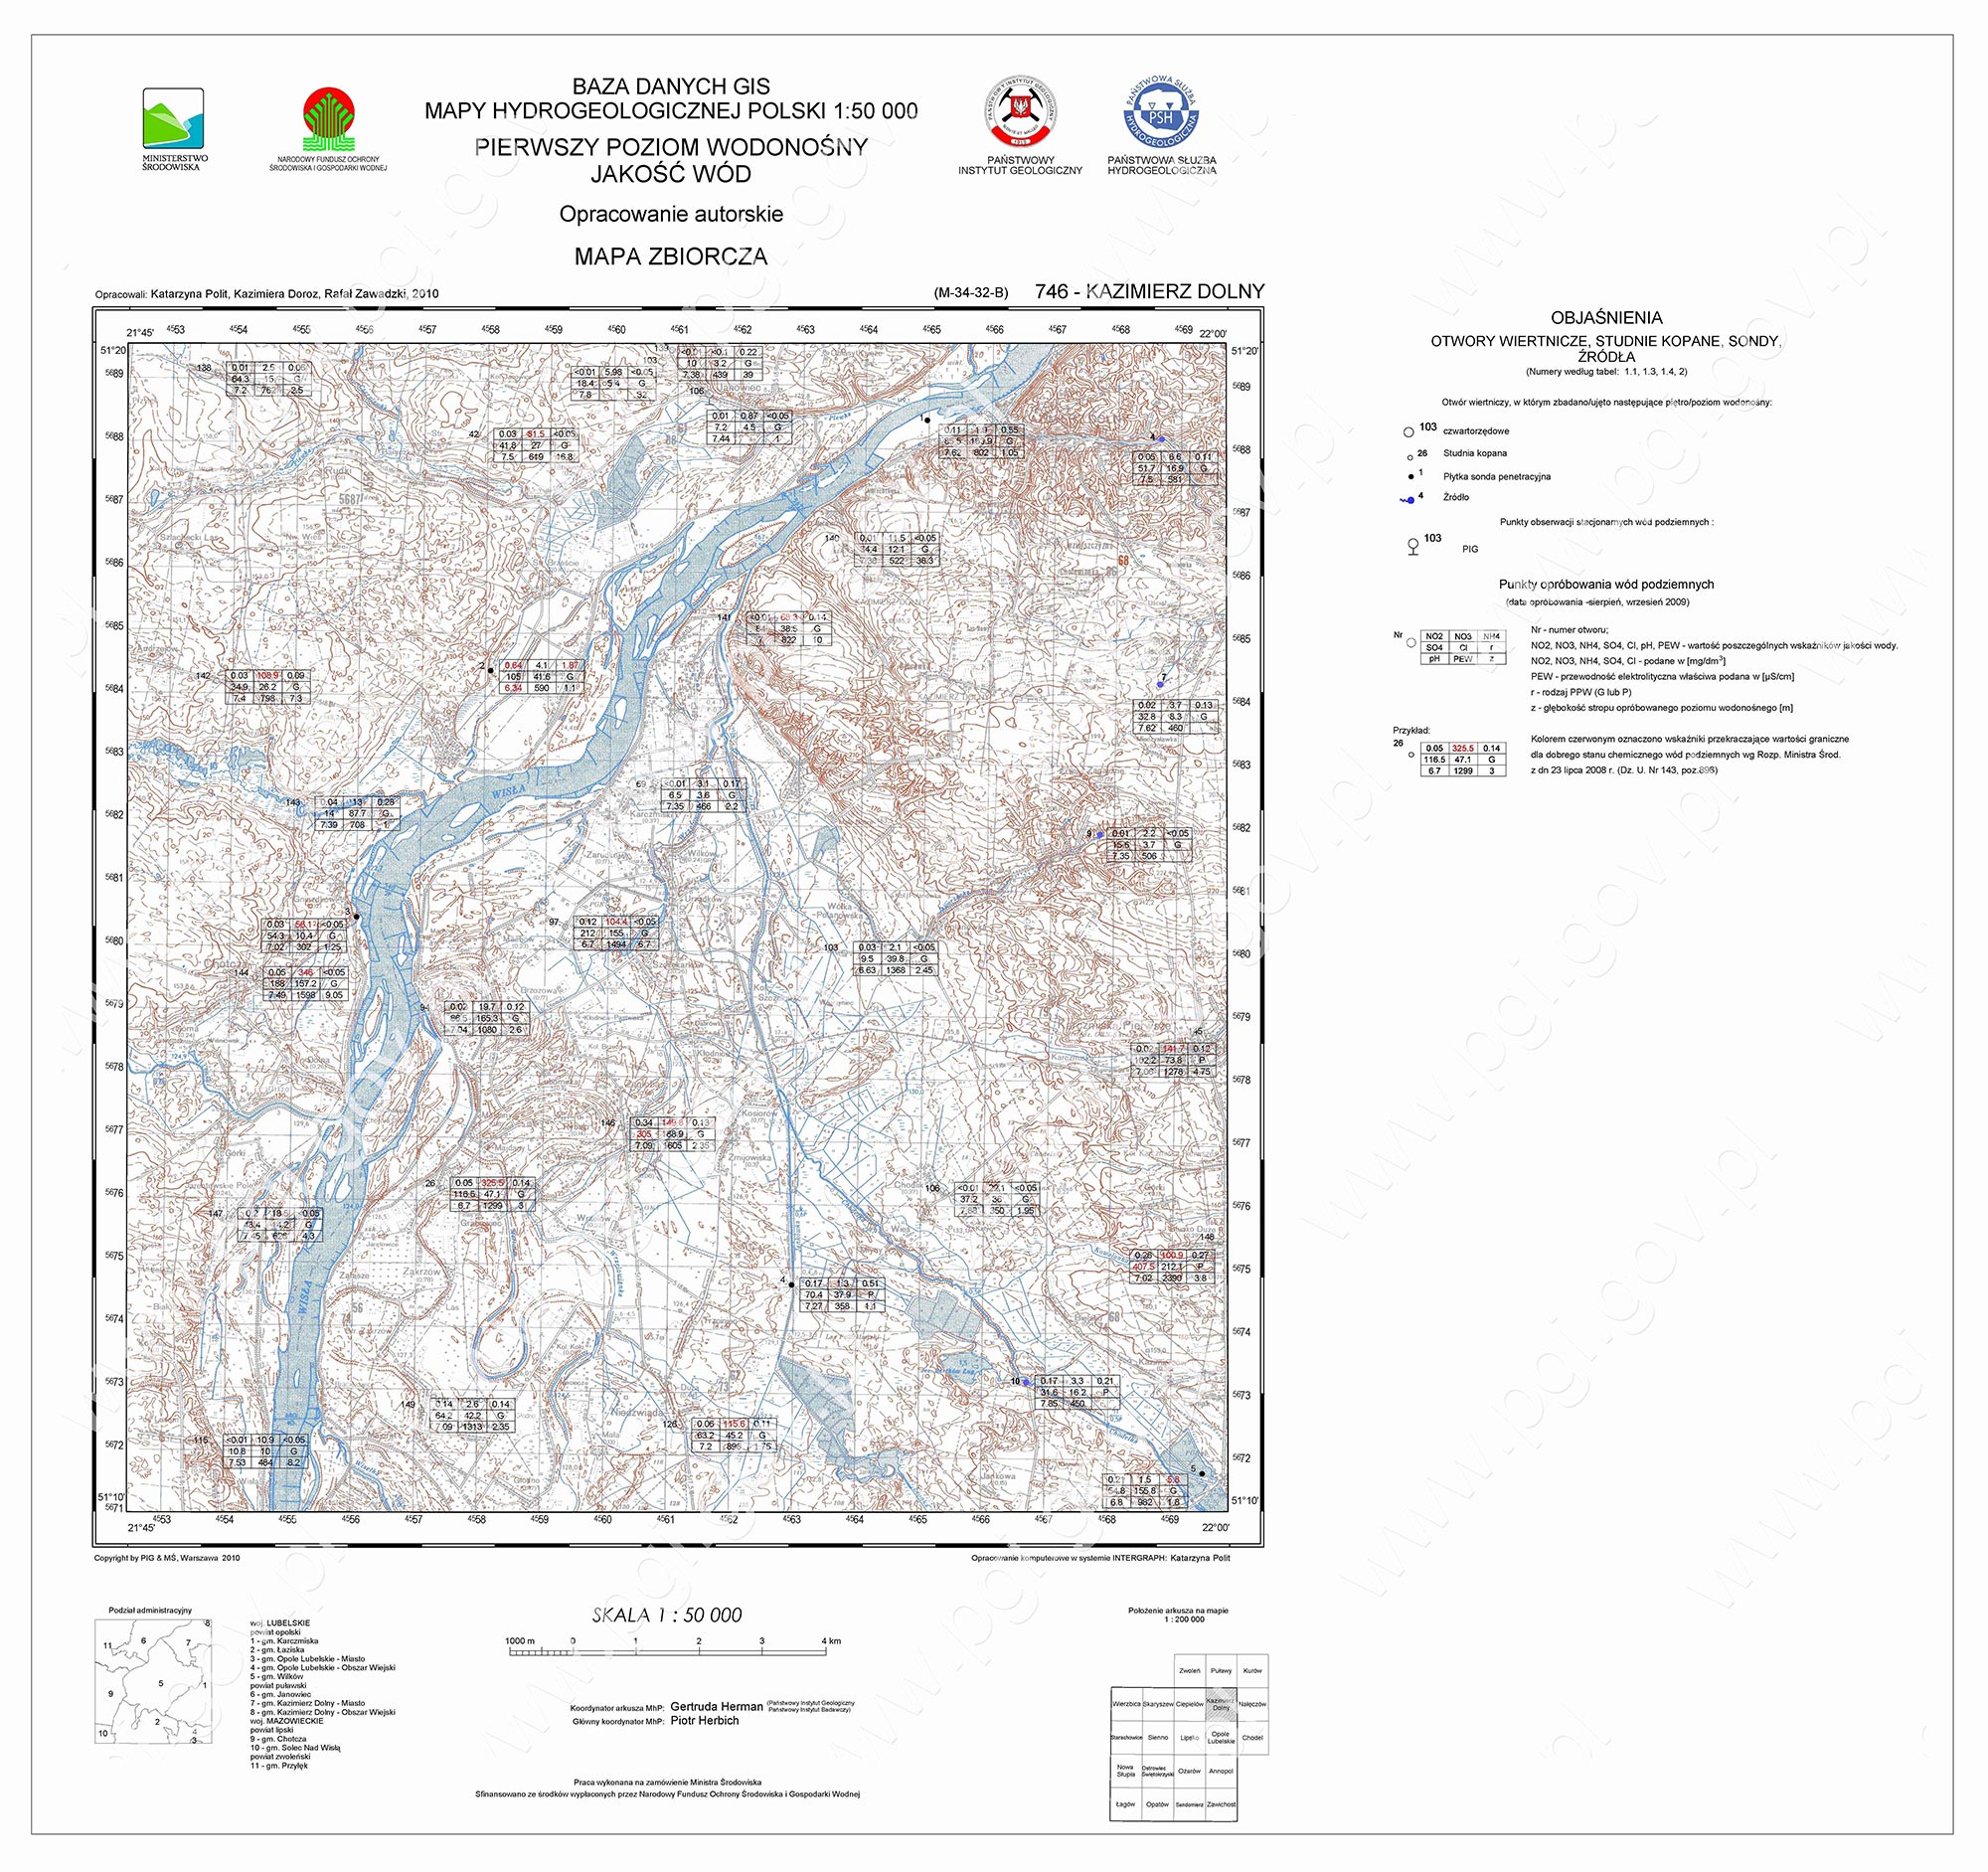 Przykład arkusza Mapy Hydrogeologicznej Polski - Pierwszy Poziom Wodonośny - Jakość wód